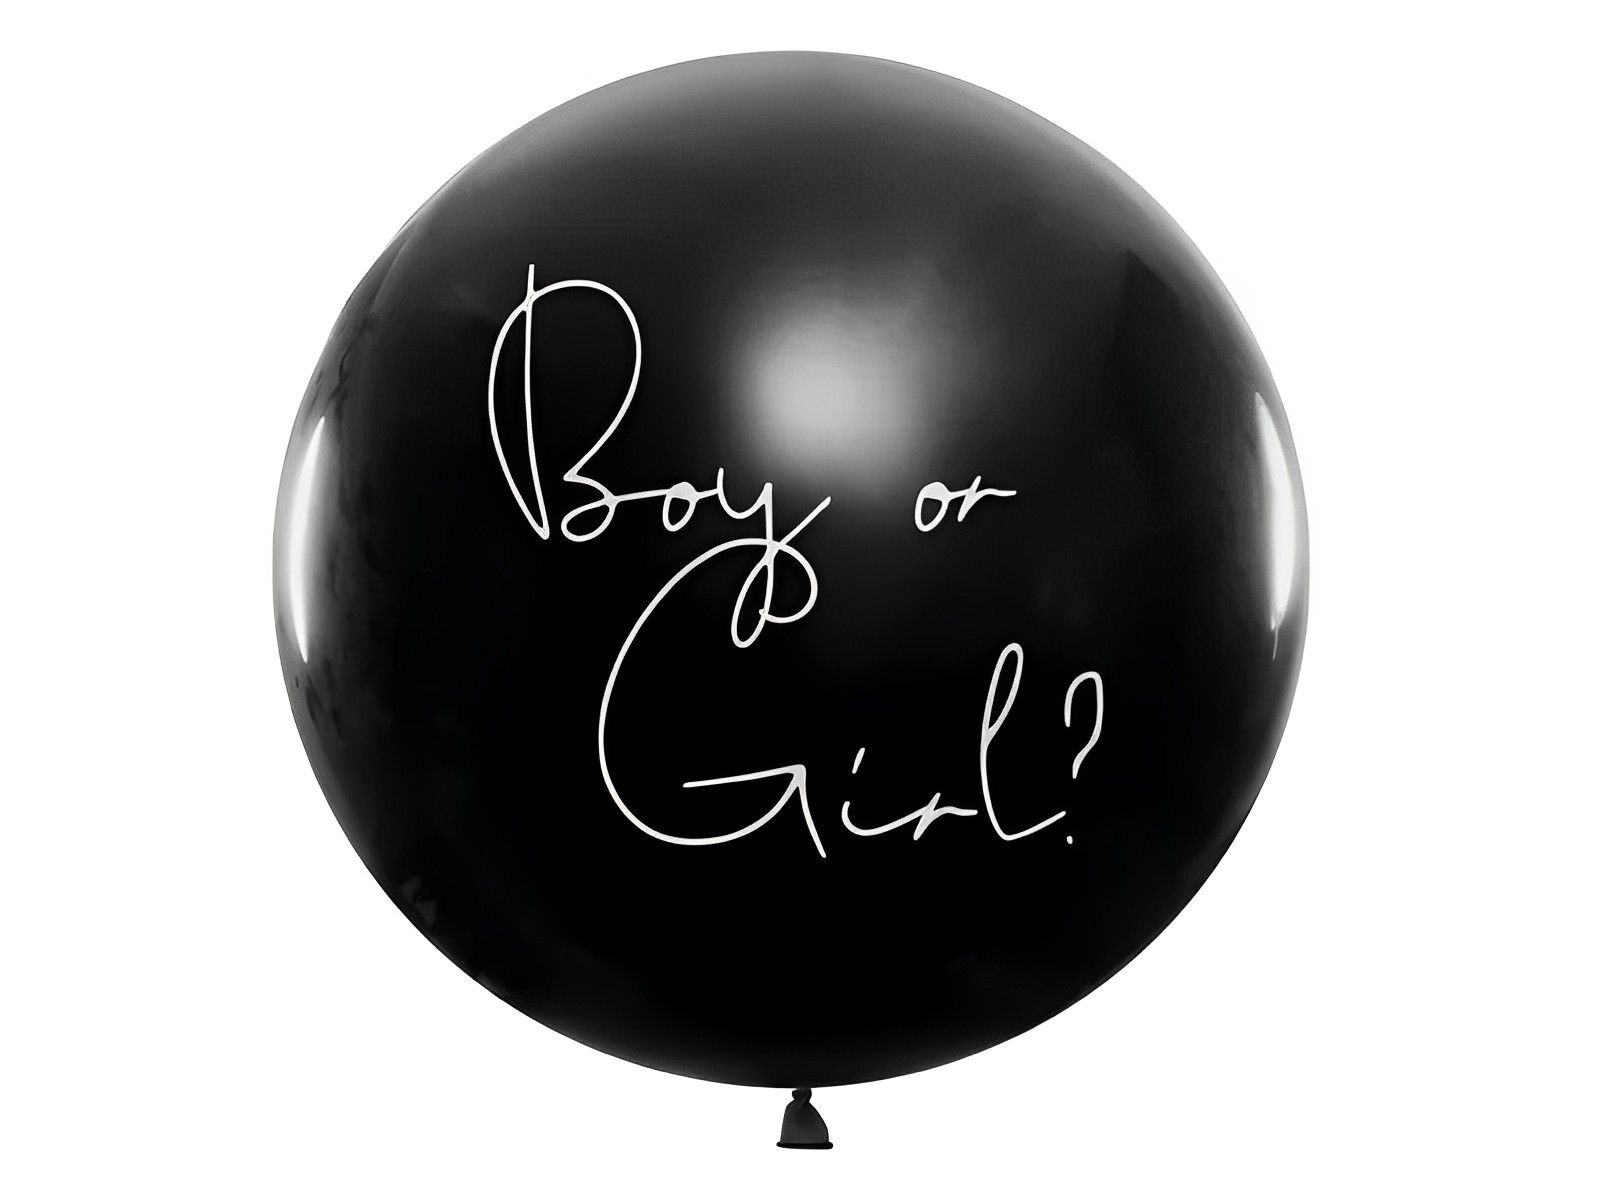 Balon Gender Reveal IdealStore, Negru cu inscriptie Boy Or Girl, Preumplut cu Conffeti Roz, Diametru 100 cm, Din Latex, Ideal pentru petrecerea Baby Shower